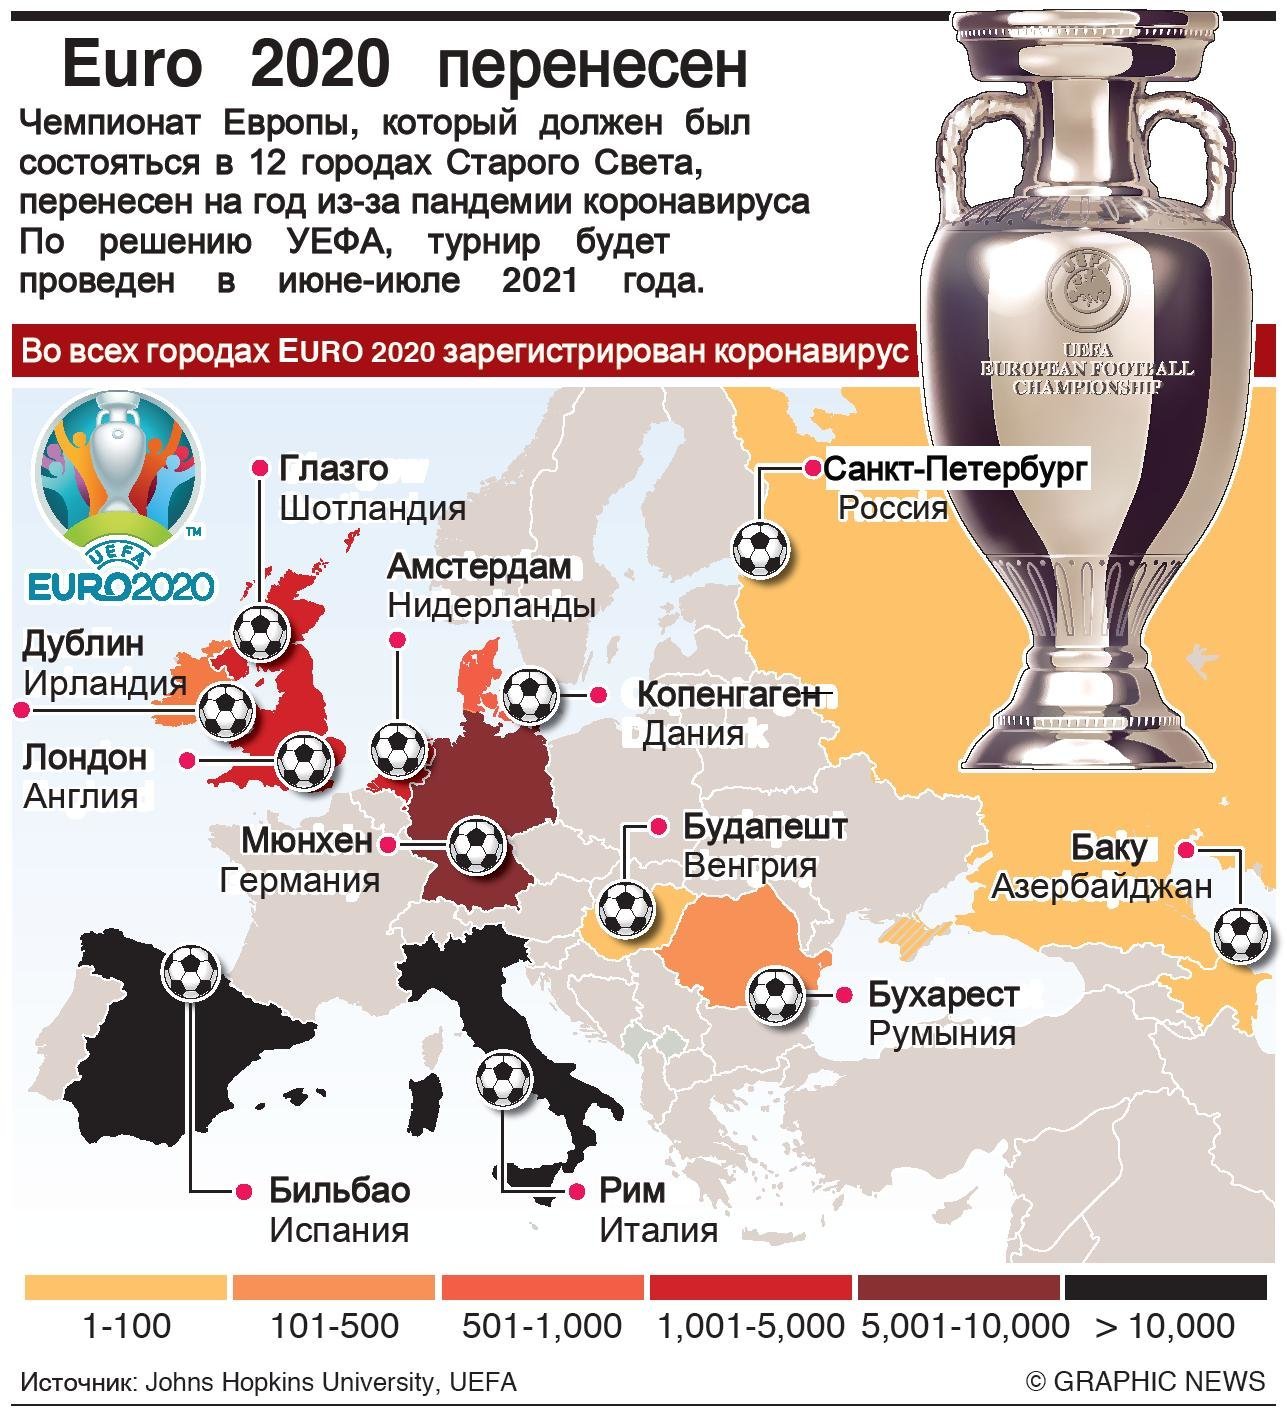 Города принимающие кубок. Футбол UEFA Euro 2020. Чемпионат Европы по футболу 2021 расписание. Календарь евро 2020 по футболу. Кубок Европы 2020.